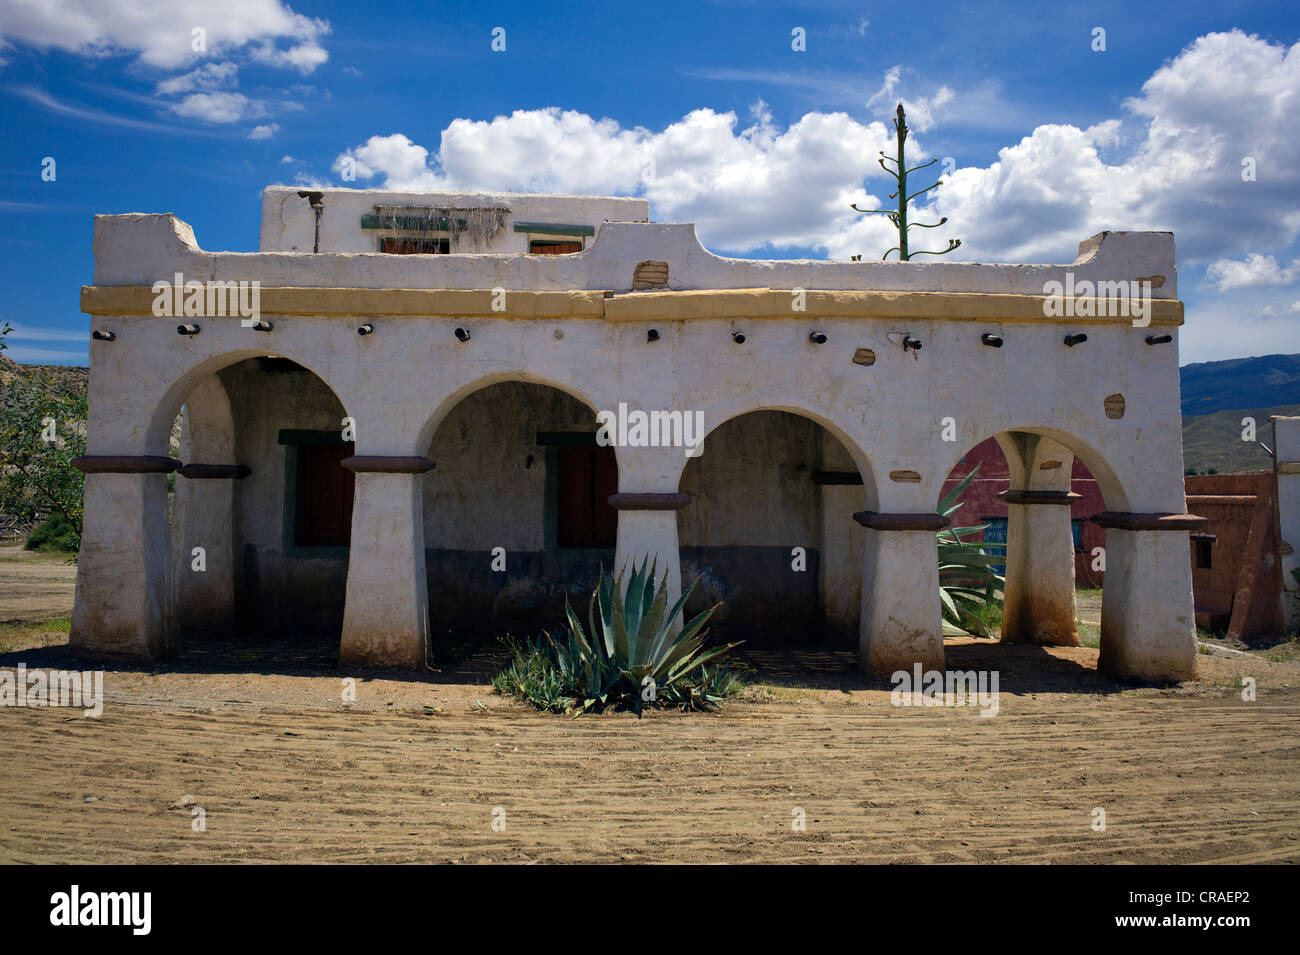 Fort Bravo, Westernstadt, ehemalige Film-set, Lucky Luke, The Daltons, jetzt eine touristische Attraktion, Tabernas, Andalusien, Spanien, Europa Stockfoto